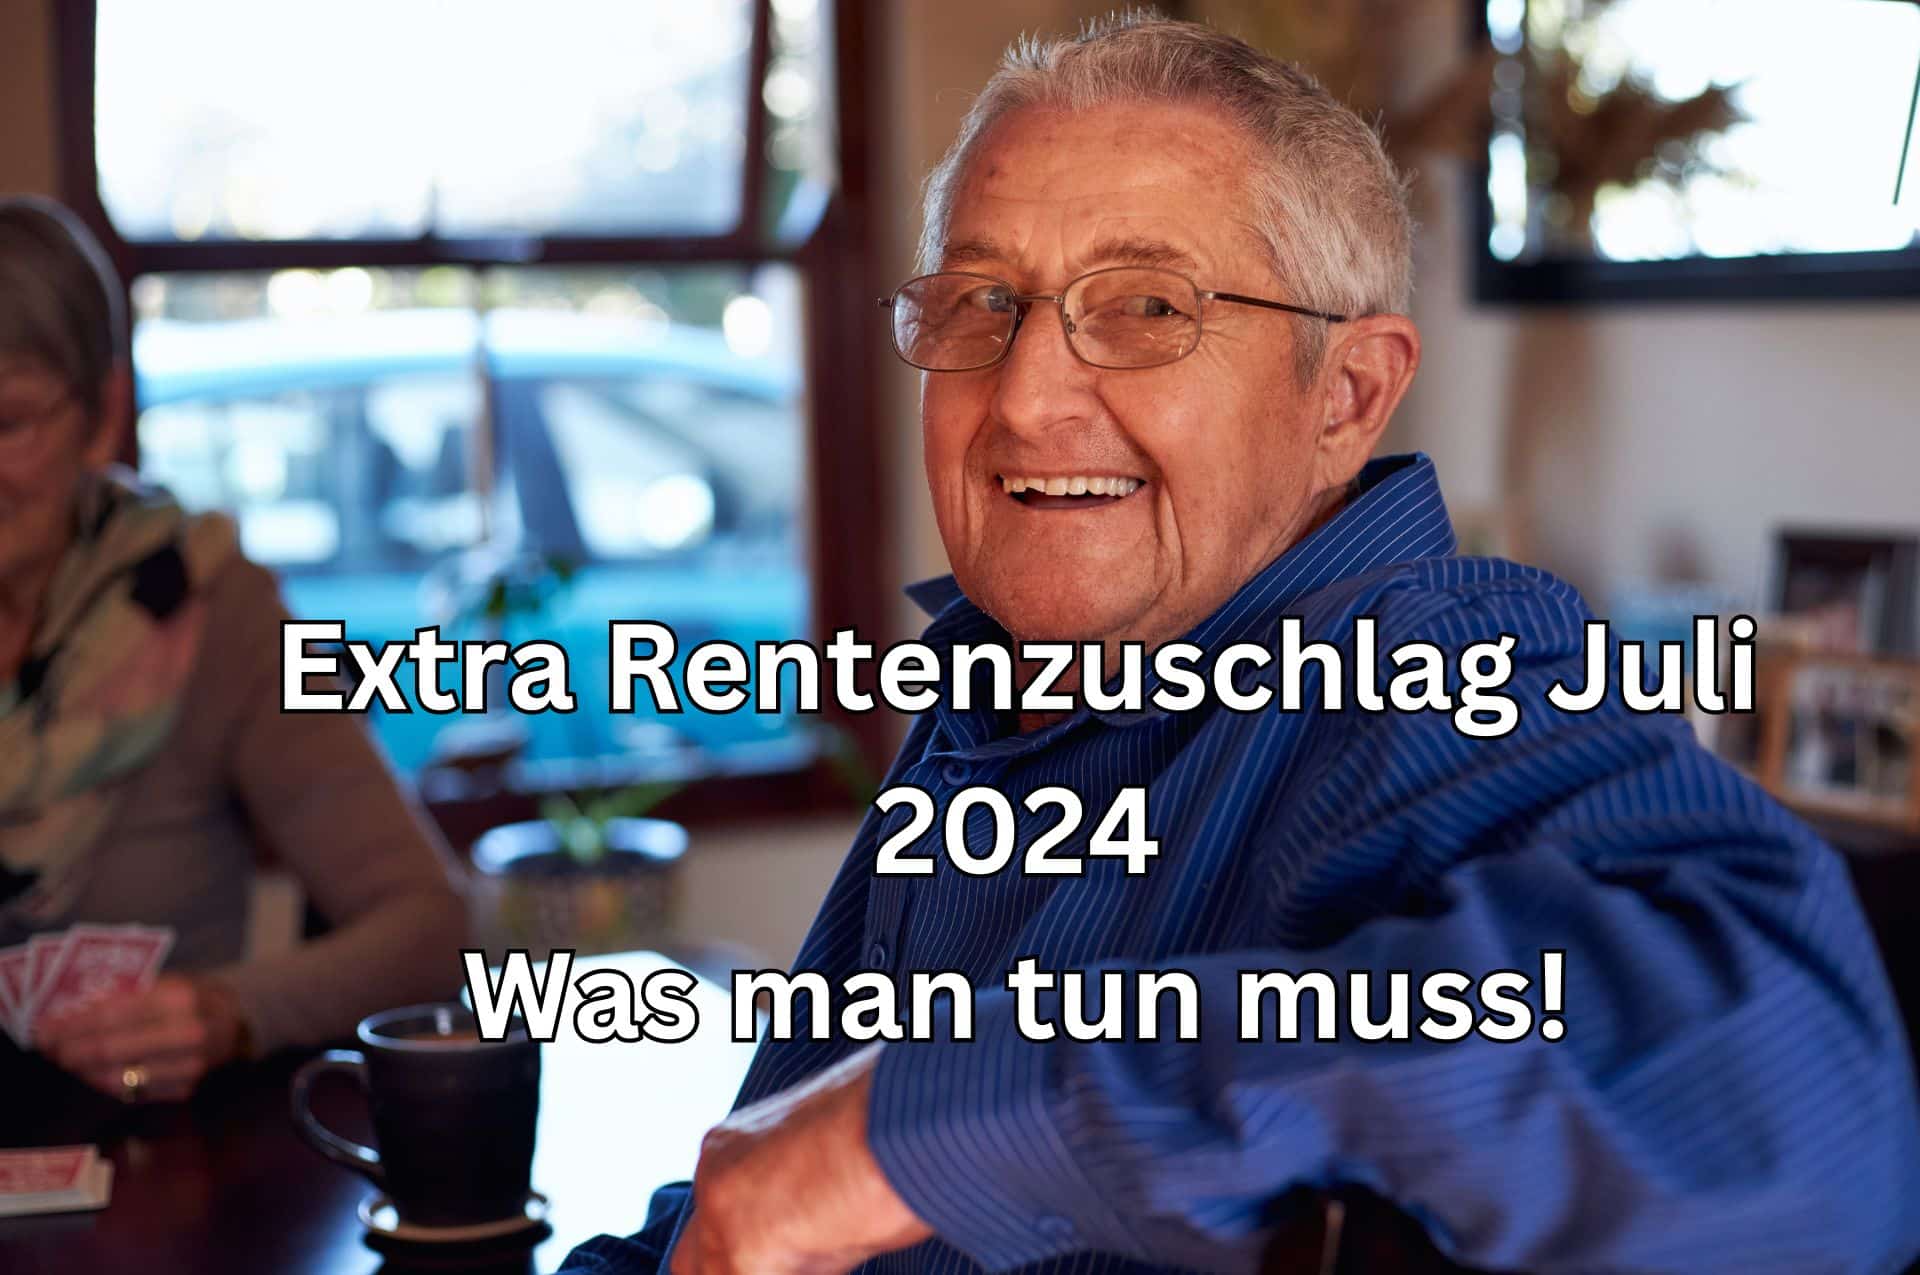 Extra Rentenzuschlag zur EM Rente Juli 2024 sichern